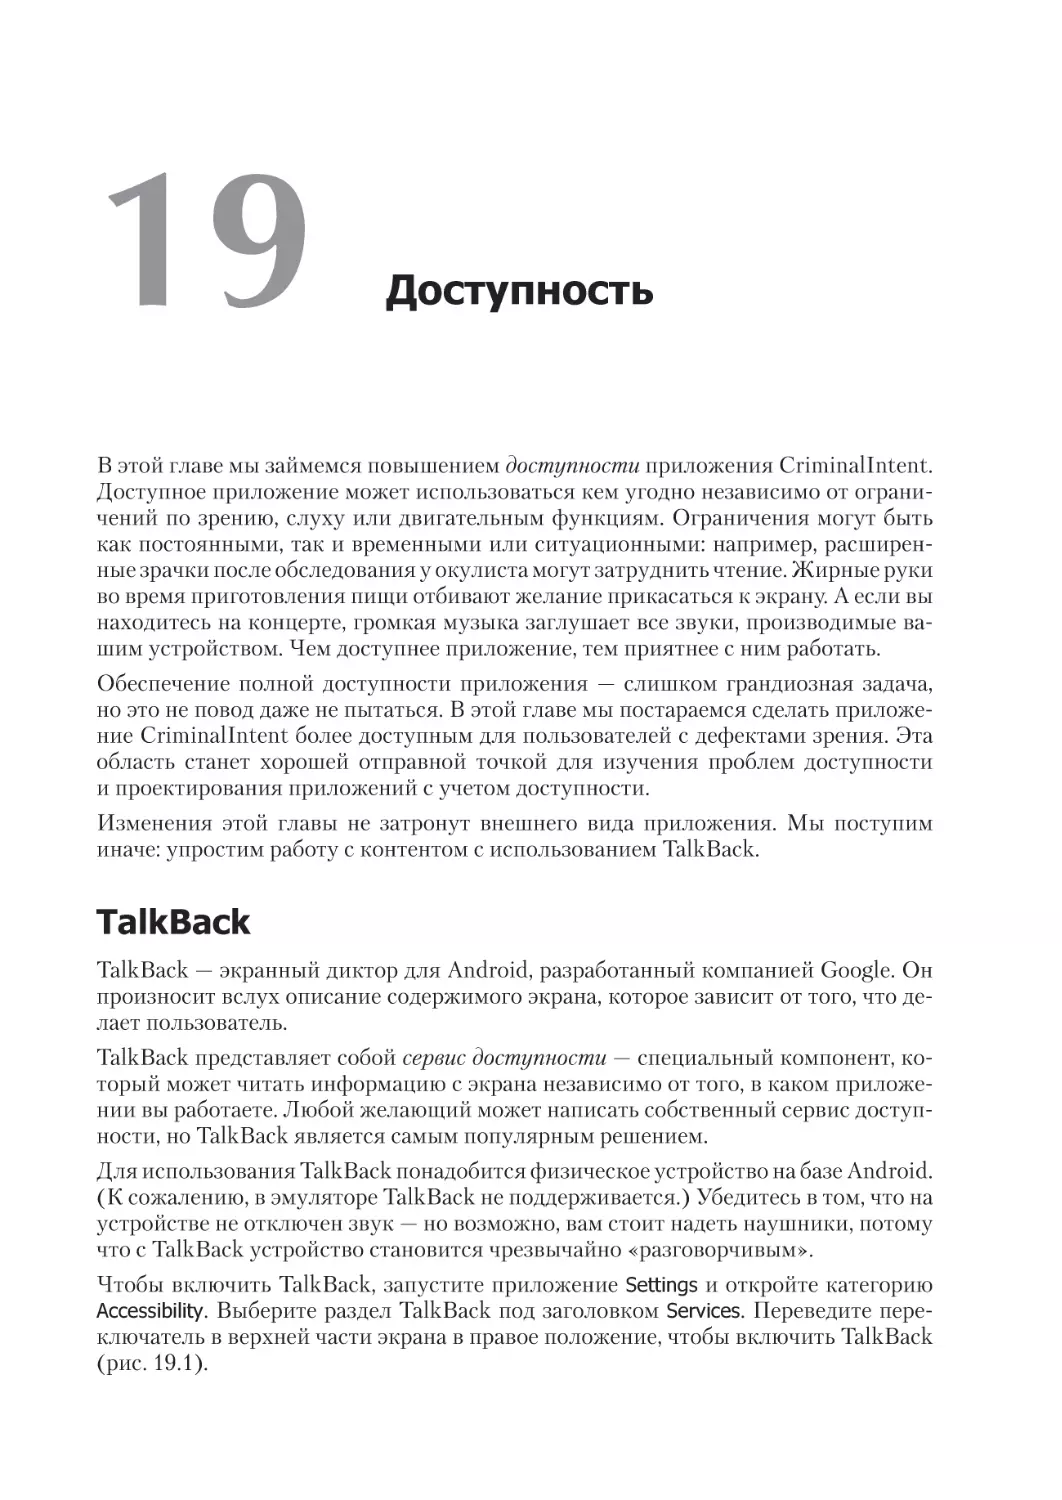 Глава 19. Доступность
TalkBack